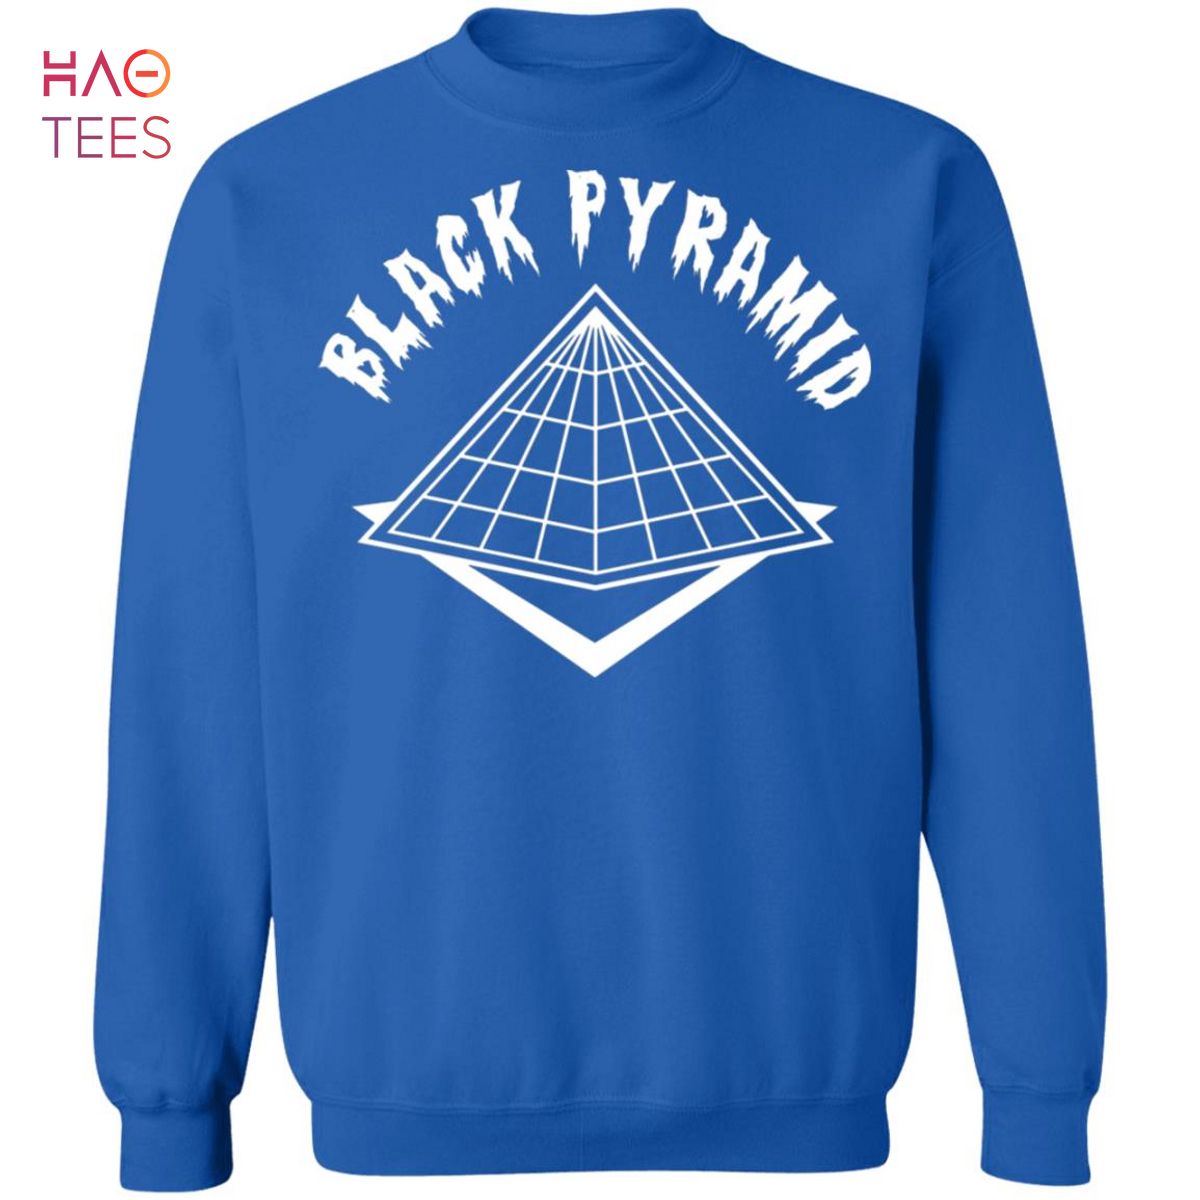 Black Pyramid Clothing